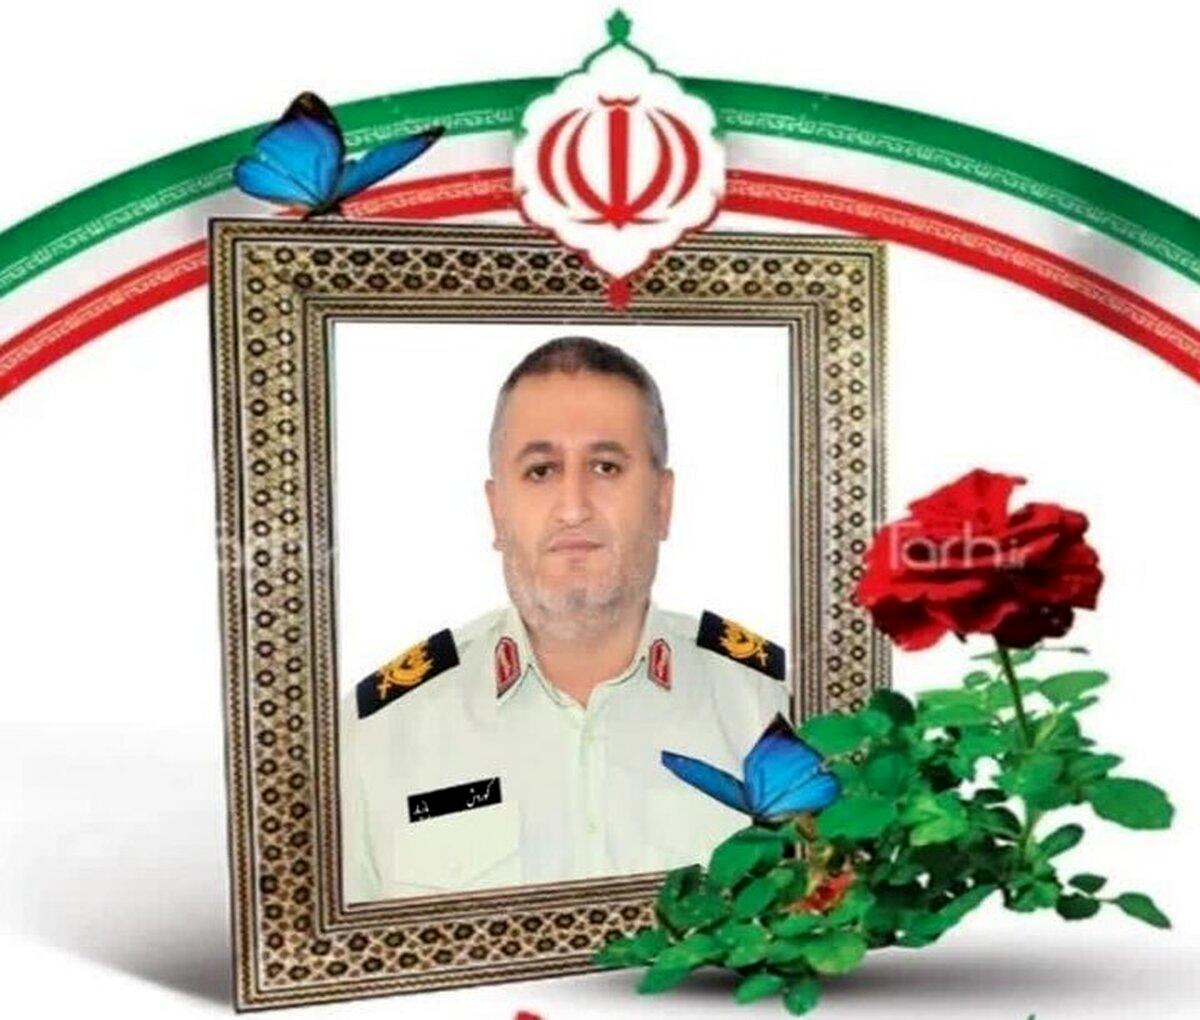 فرمانده یگان امداد پلیس شیراز به شهادت رسید

